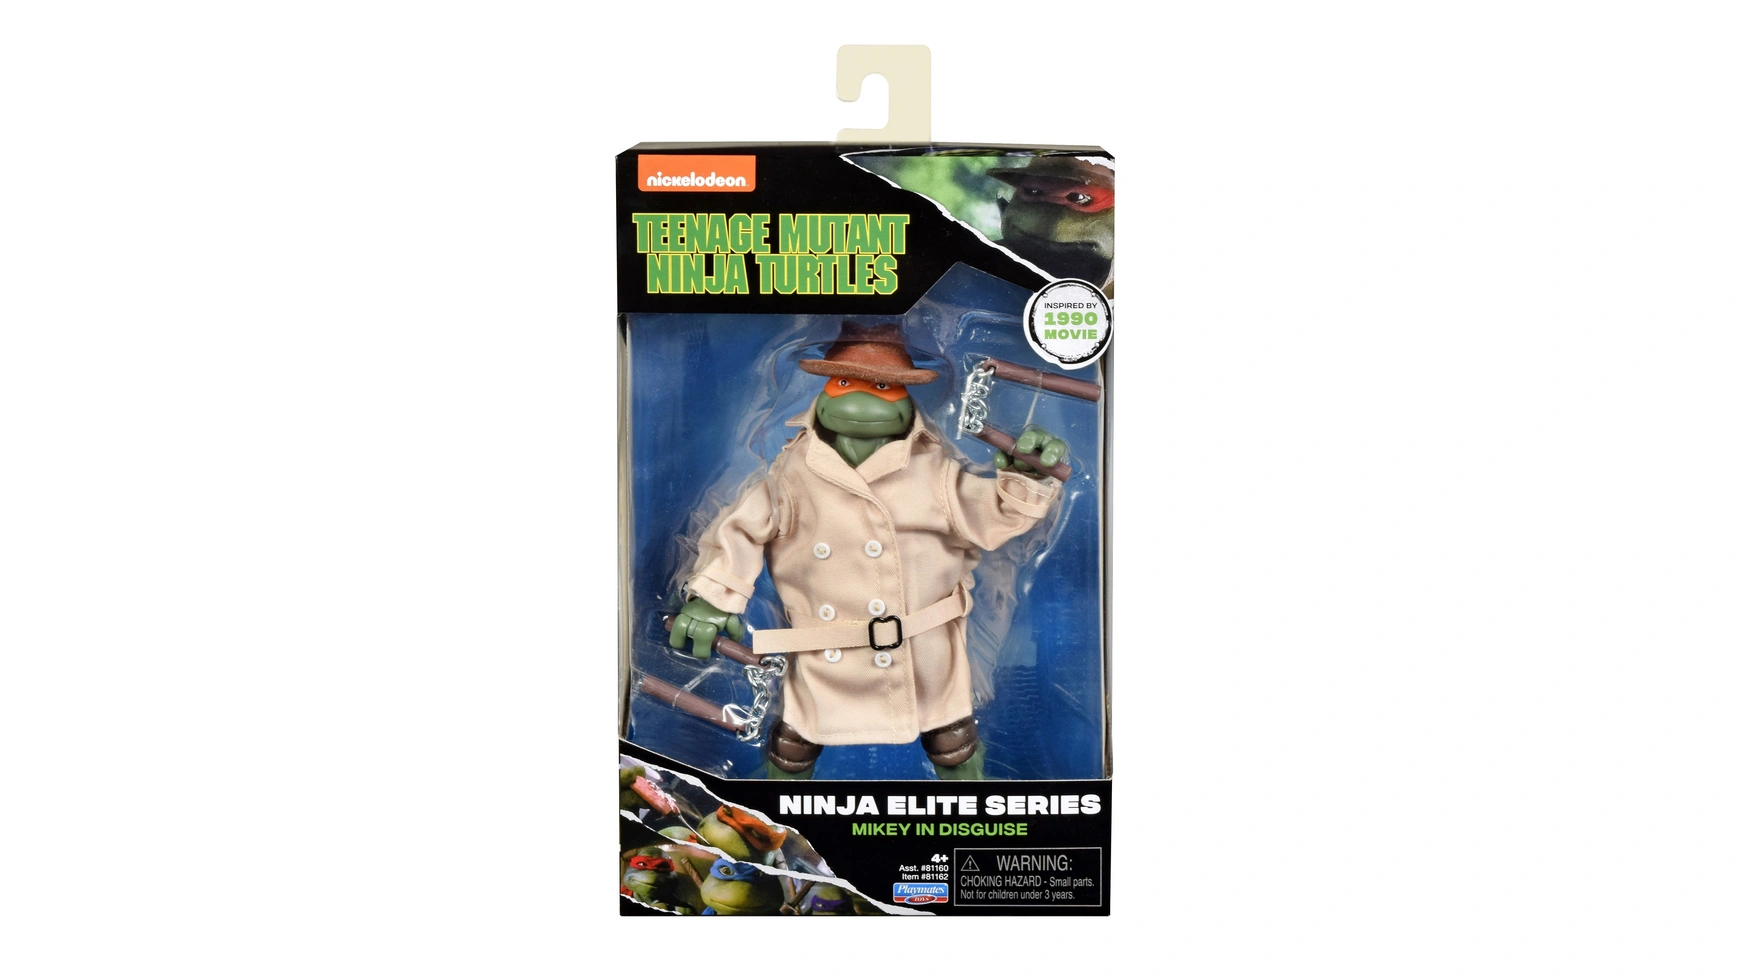 Turtles-ниндзя Ninja Elite Mike фигурка reaction figure teenage mutant ninja turtles – shredder 9 см